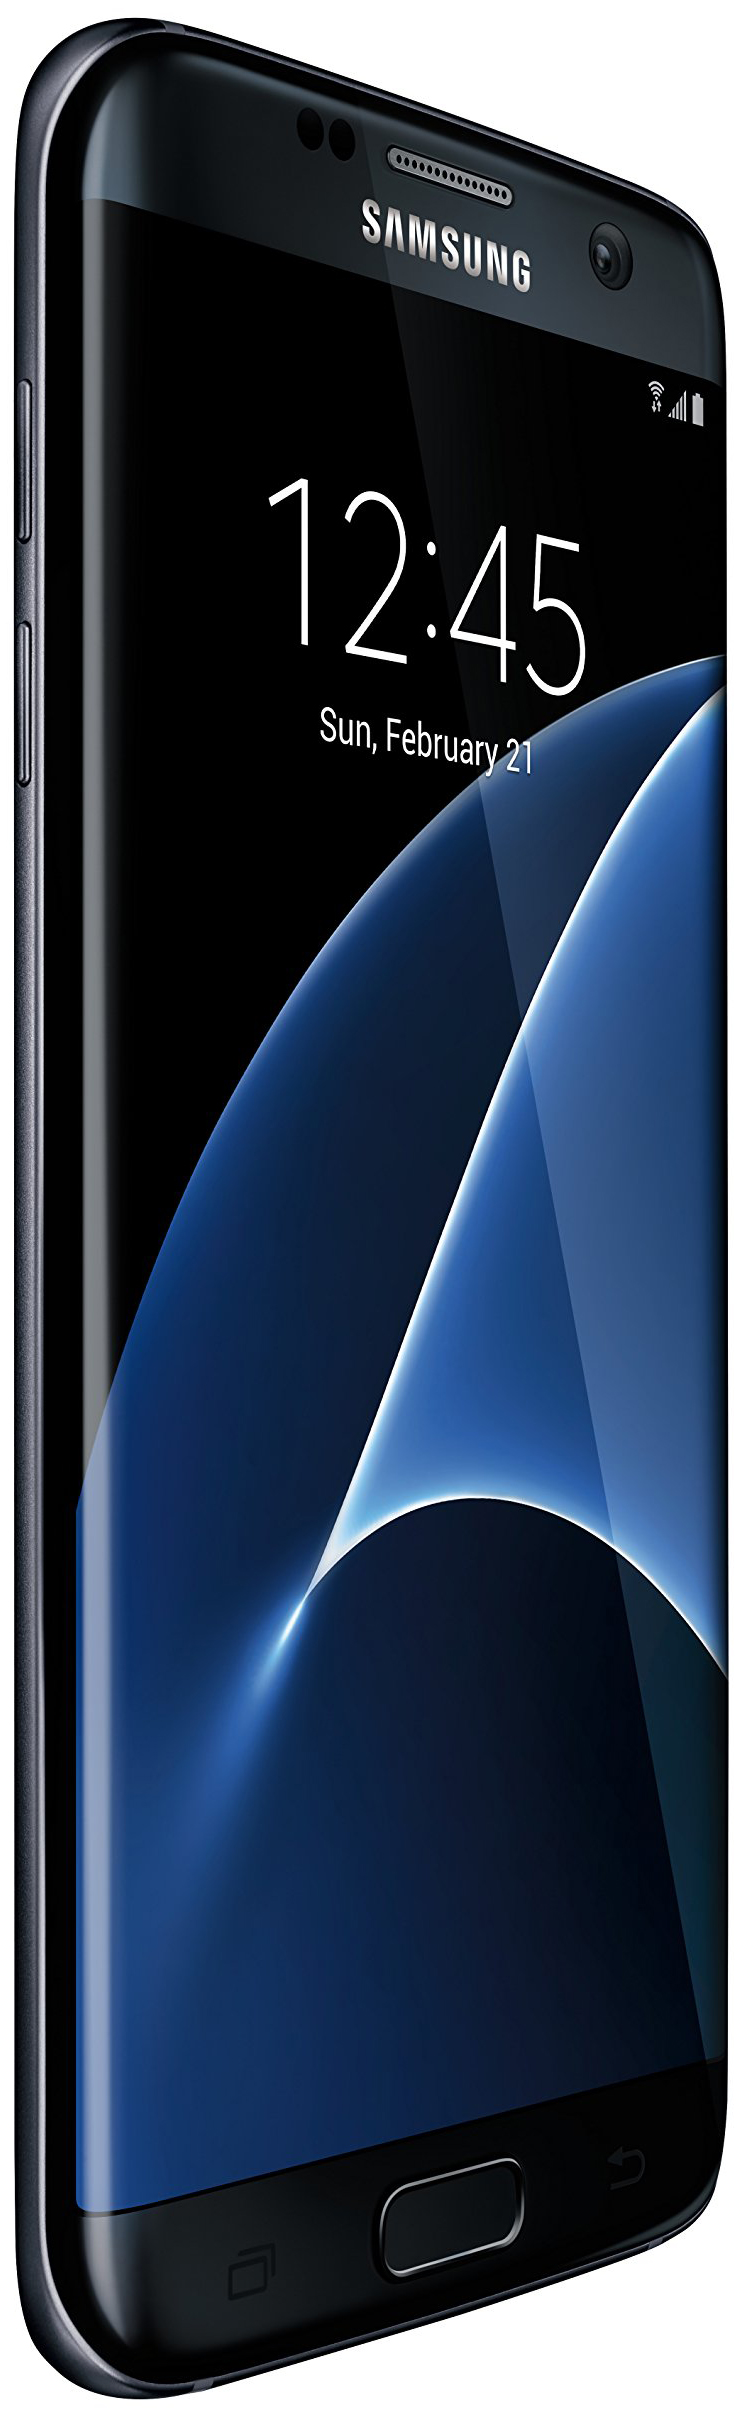 Samsung Galaxy S7 Edge Phone là chiếc điện thoại được trang bị đầy đủ các tính năng và đẳng cấp nhất hiện nay. Những bức ảnh tuyệt đẹp trong bộ sưu tập của chúng tôi sẽ giúp bạn khám phá lại vẻ đẹp hoàn hảo của sản phẩm này, đồng thời tạo nên sự khác biệt và cá tính cho chiếc điện thoại của bạn.